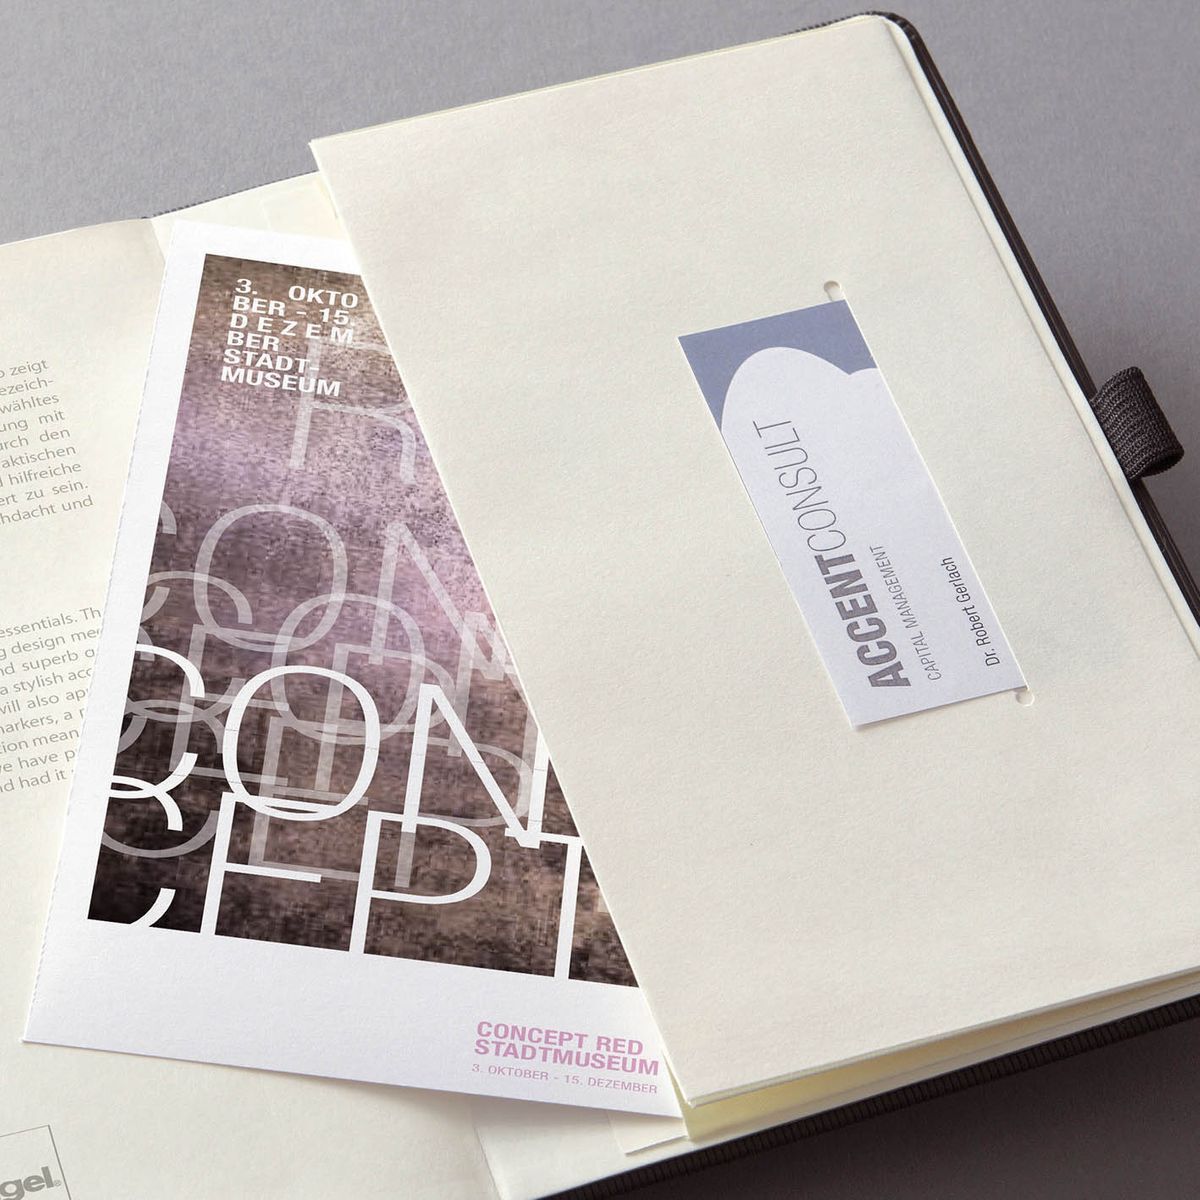 Notizbuch Conceptum - Tablet Format (180x240 mm), Hardcover, kariert, 194 Seite, schwarz